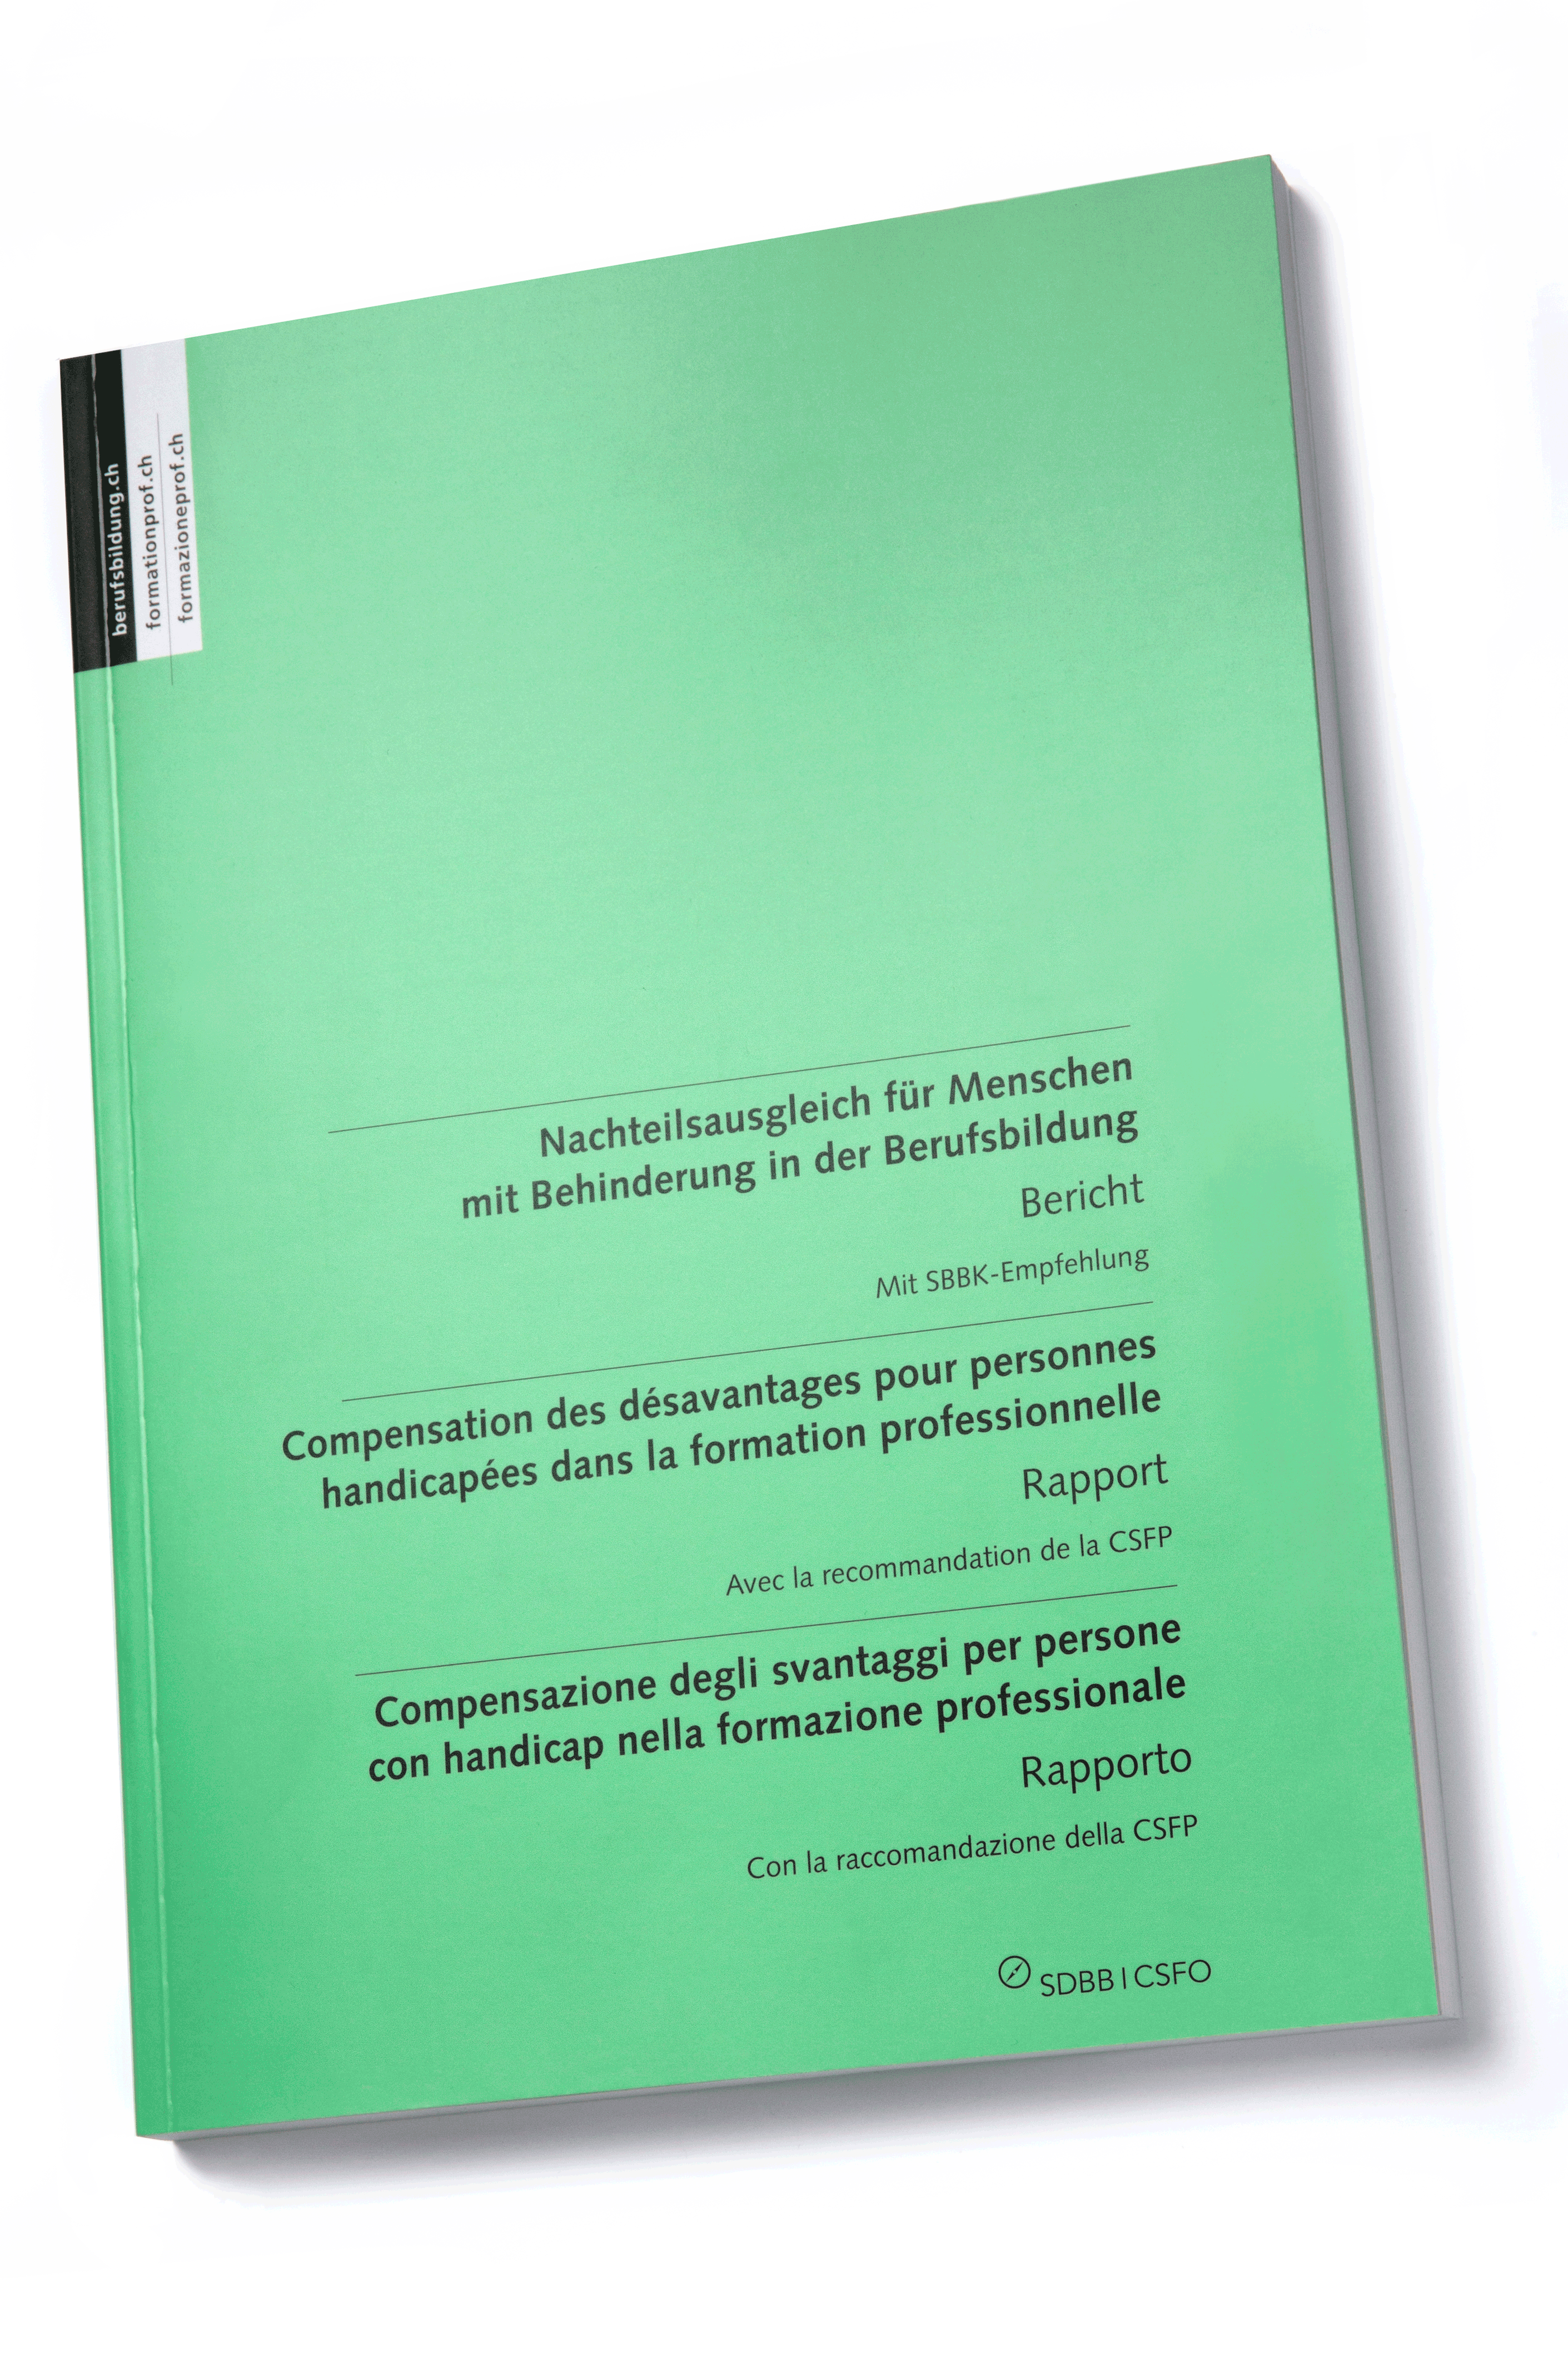 Copertina del libro "Compensazione degli svantaggi per persone con handicap nella formazione professionale"